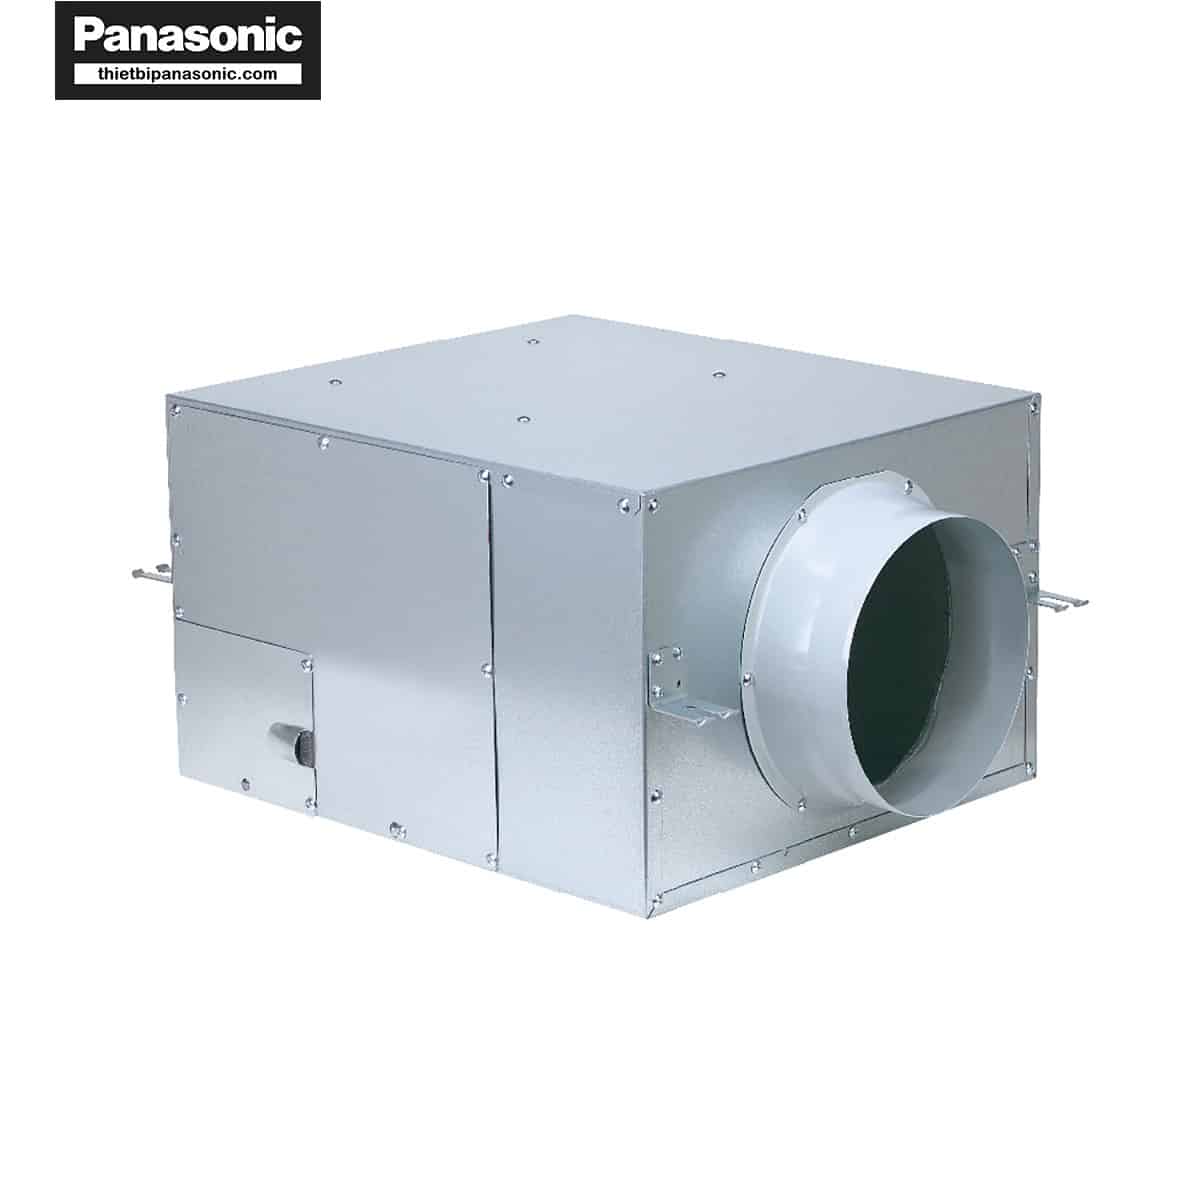 Quạt hút Cabinet Panasonic FV-12NS3 có thiết kế vuông vức, cứng cáp nhờ làm từ vật liệu thép mạ kẽm